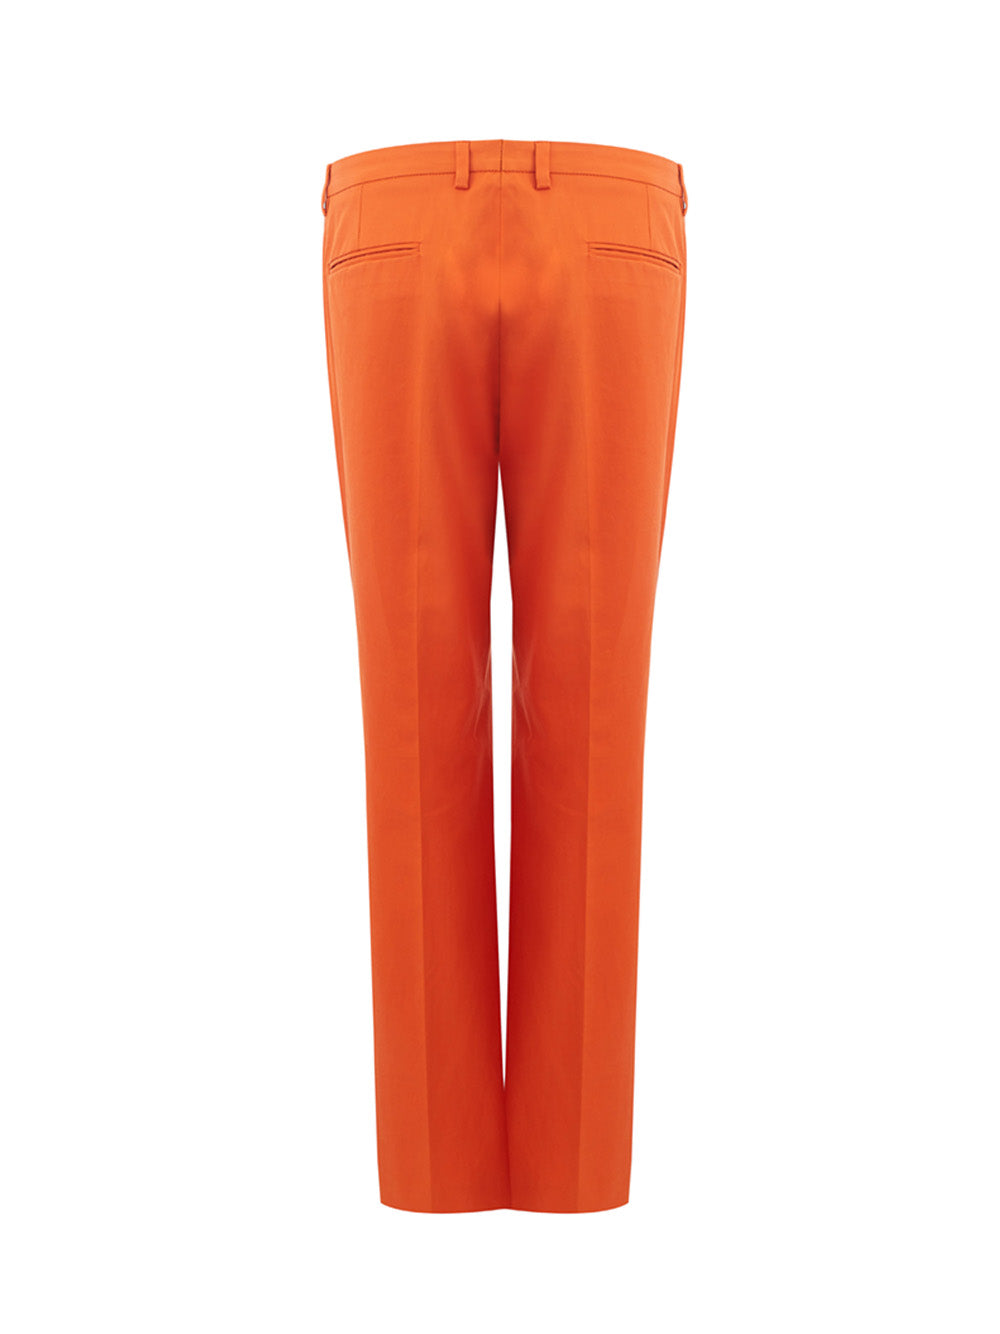 Pantalón de algodón naranja